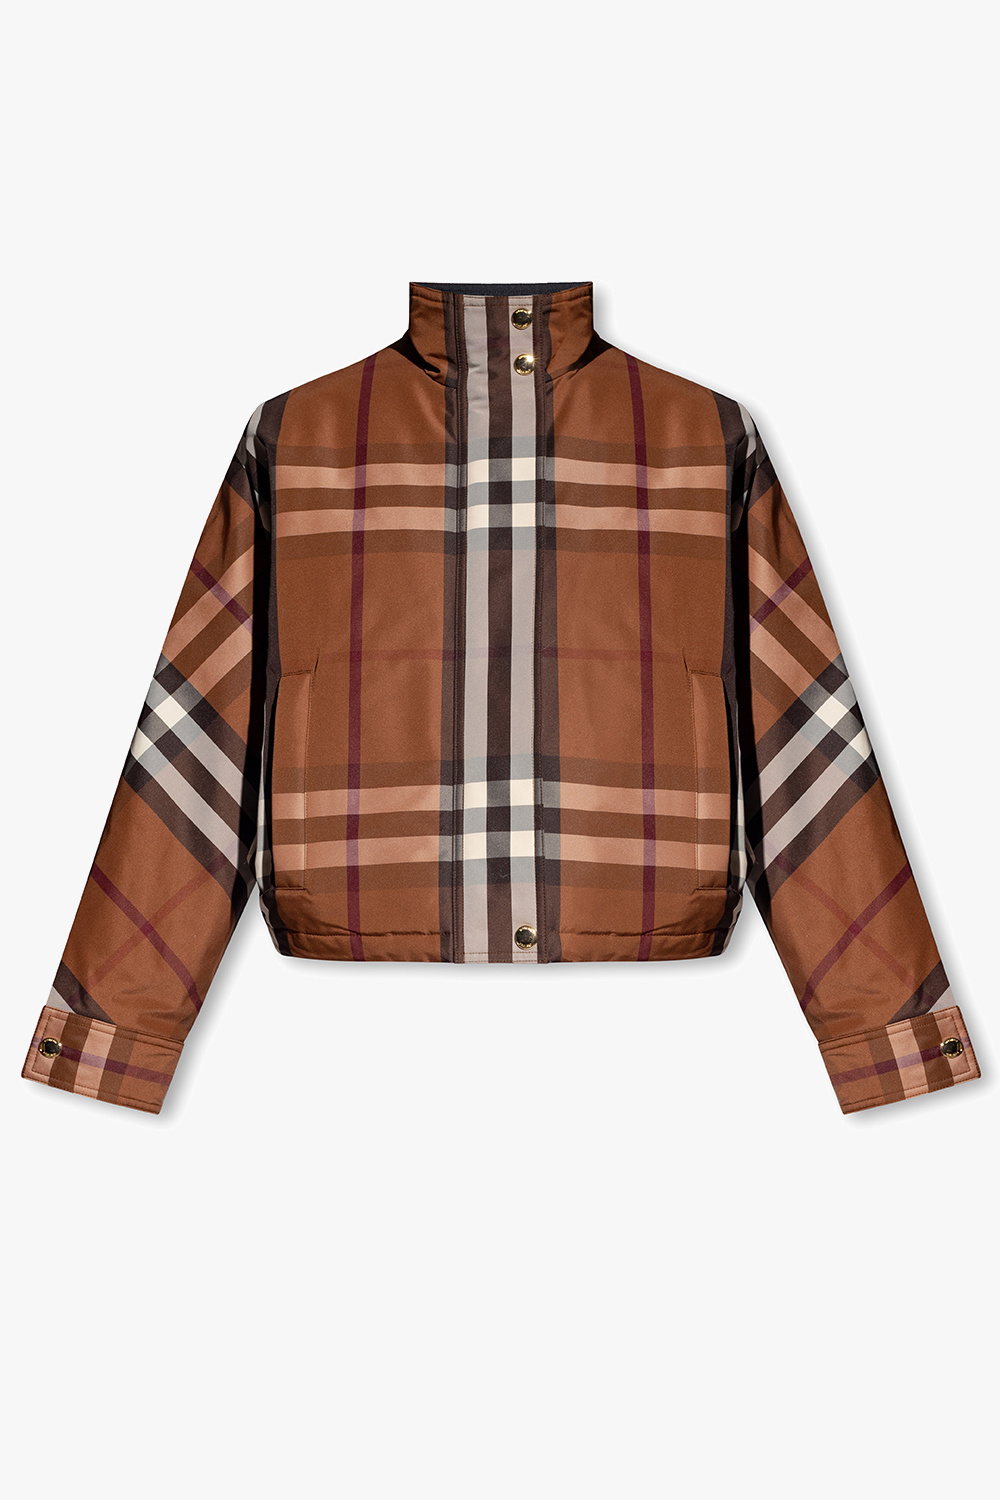 Burberry ‘Ayton’ jacket